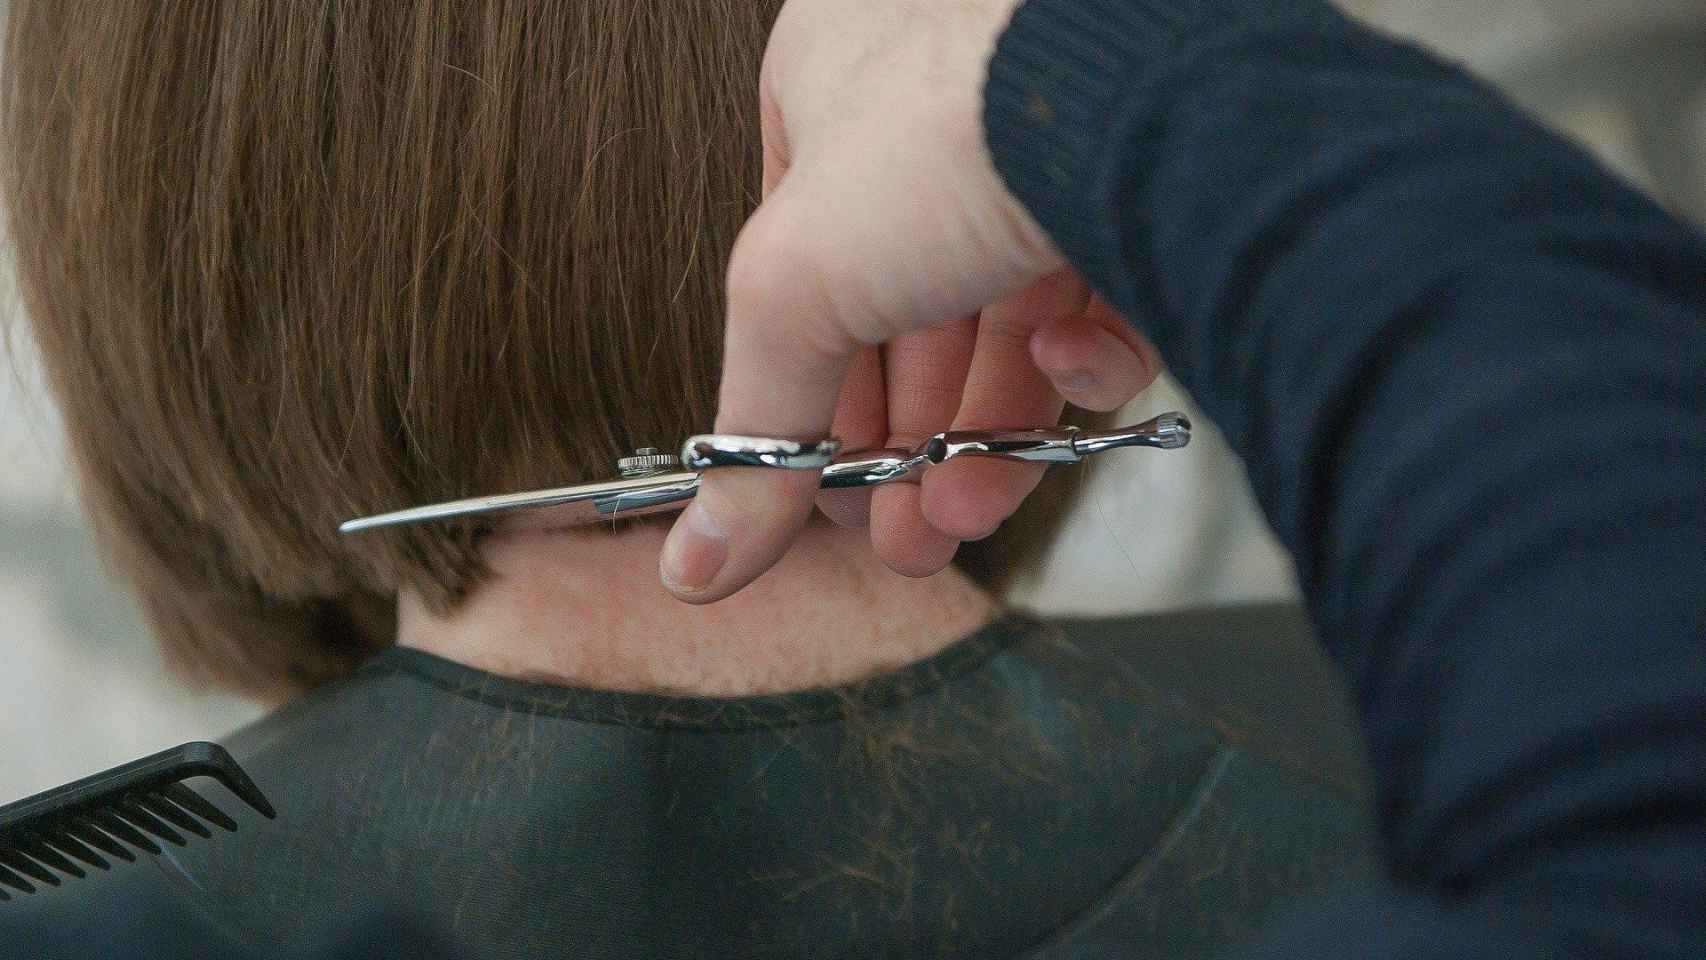 Un peluquero le corta el pelo a una mujer con unas tijeras / CG